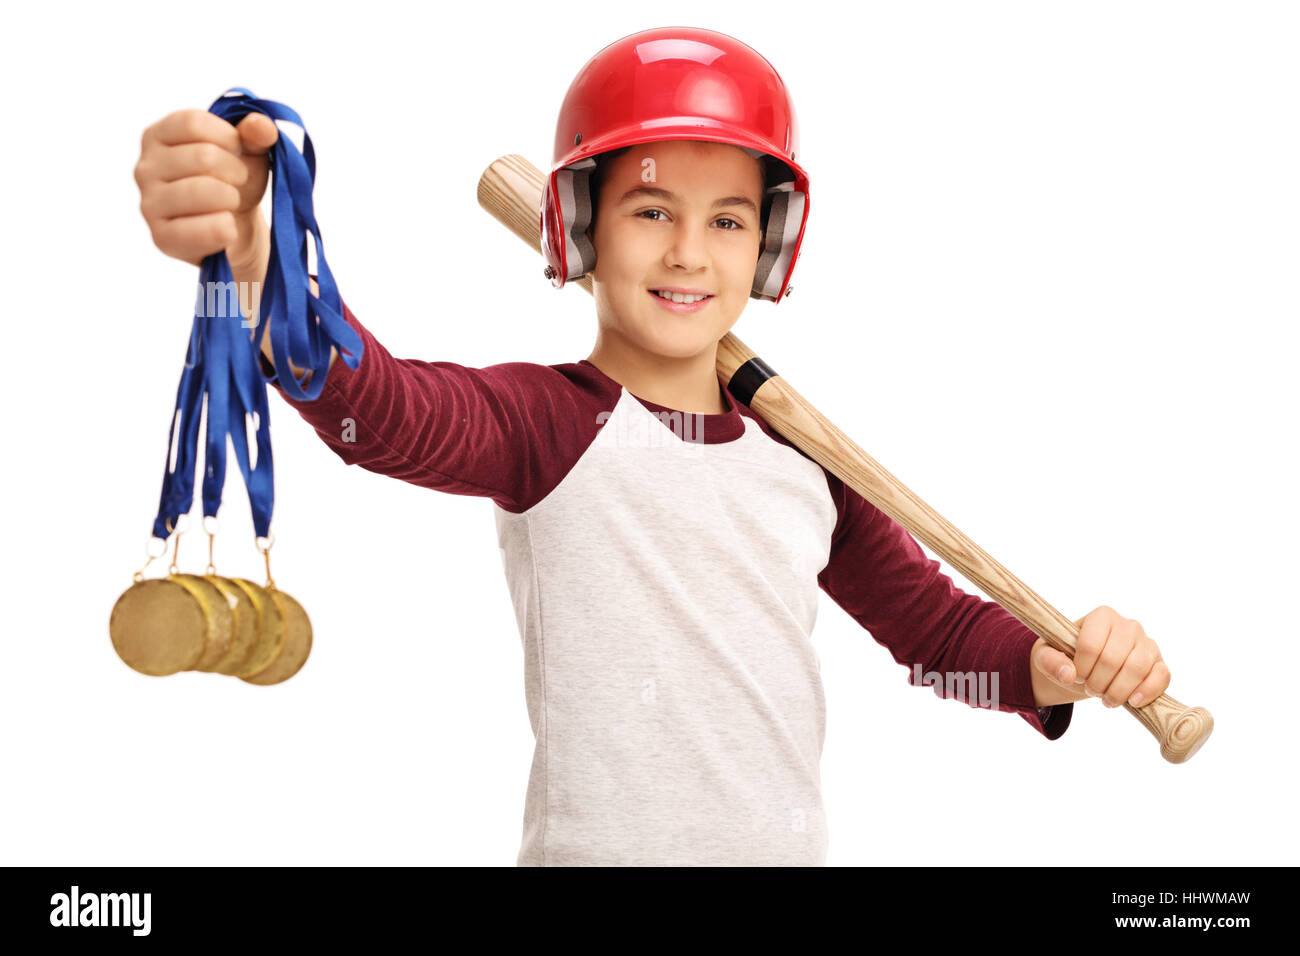 Happy boy holding médailles d'or et un bâton de baseball isolé sur fond blanc Banque D'Images